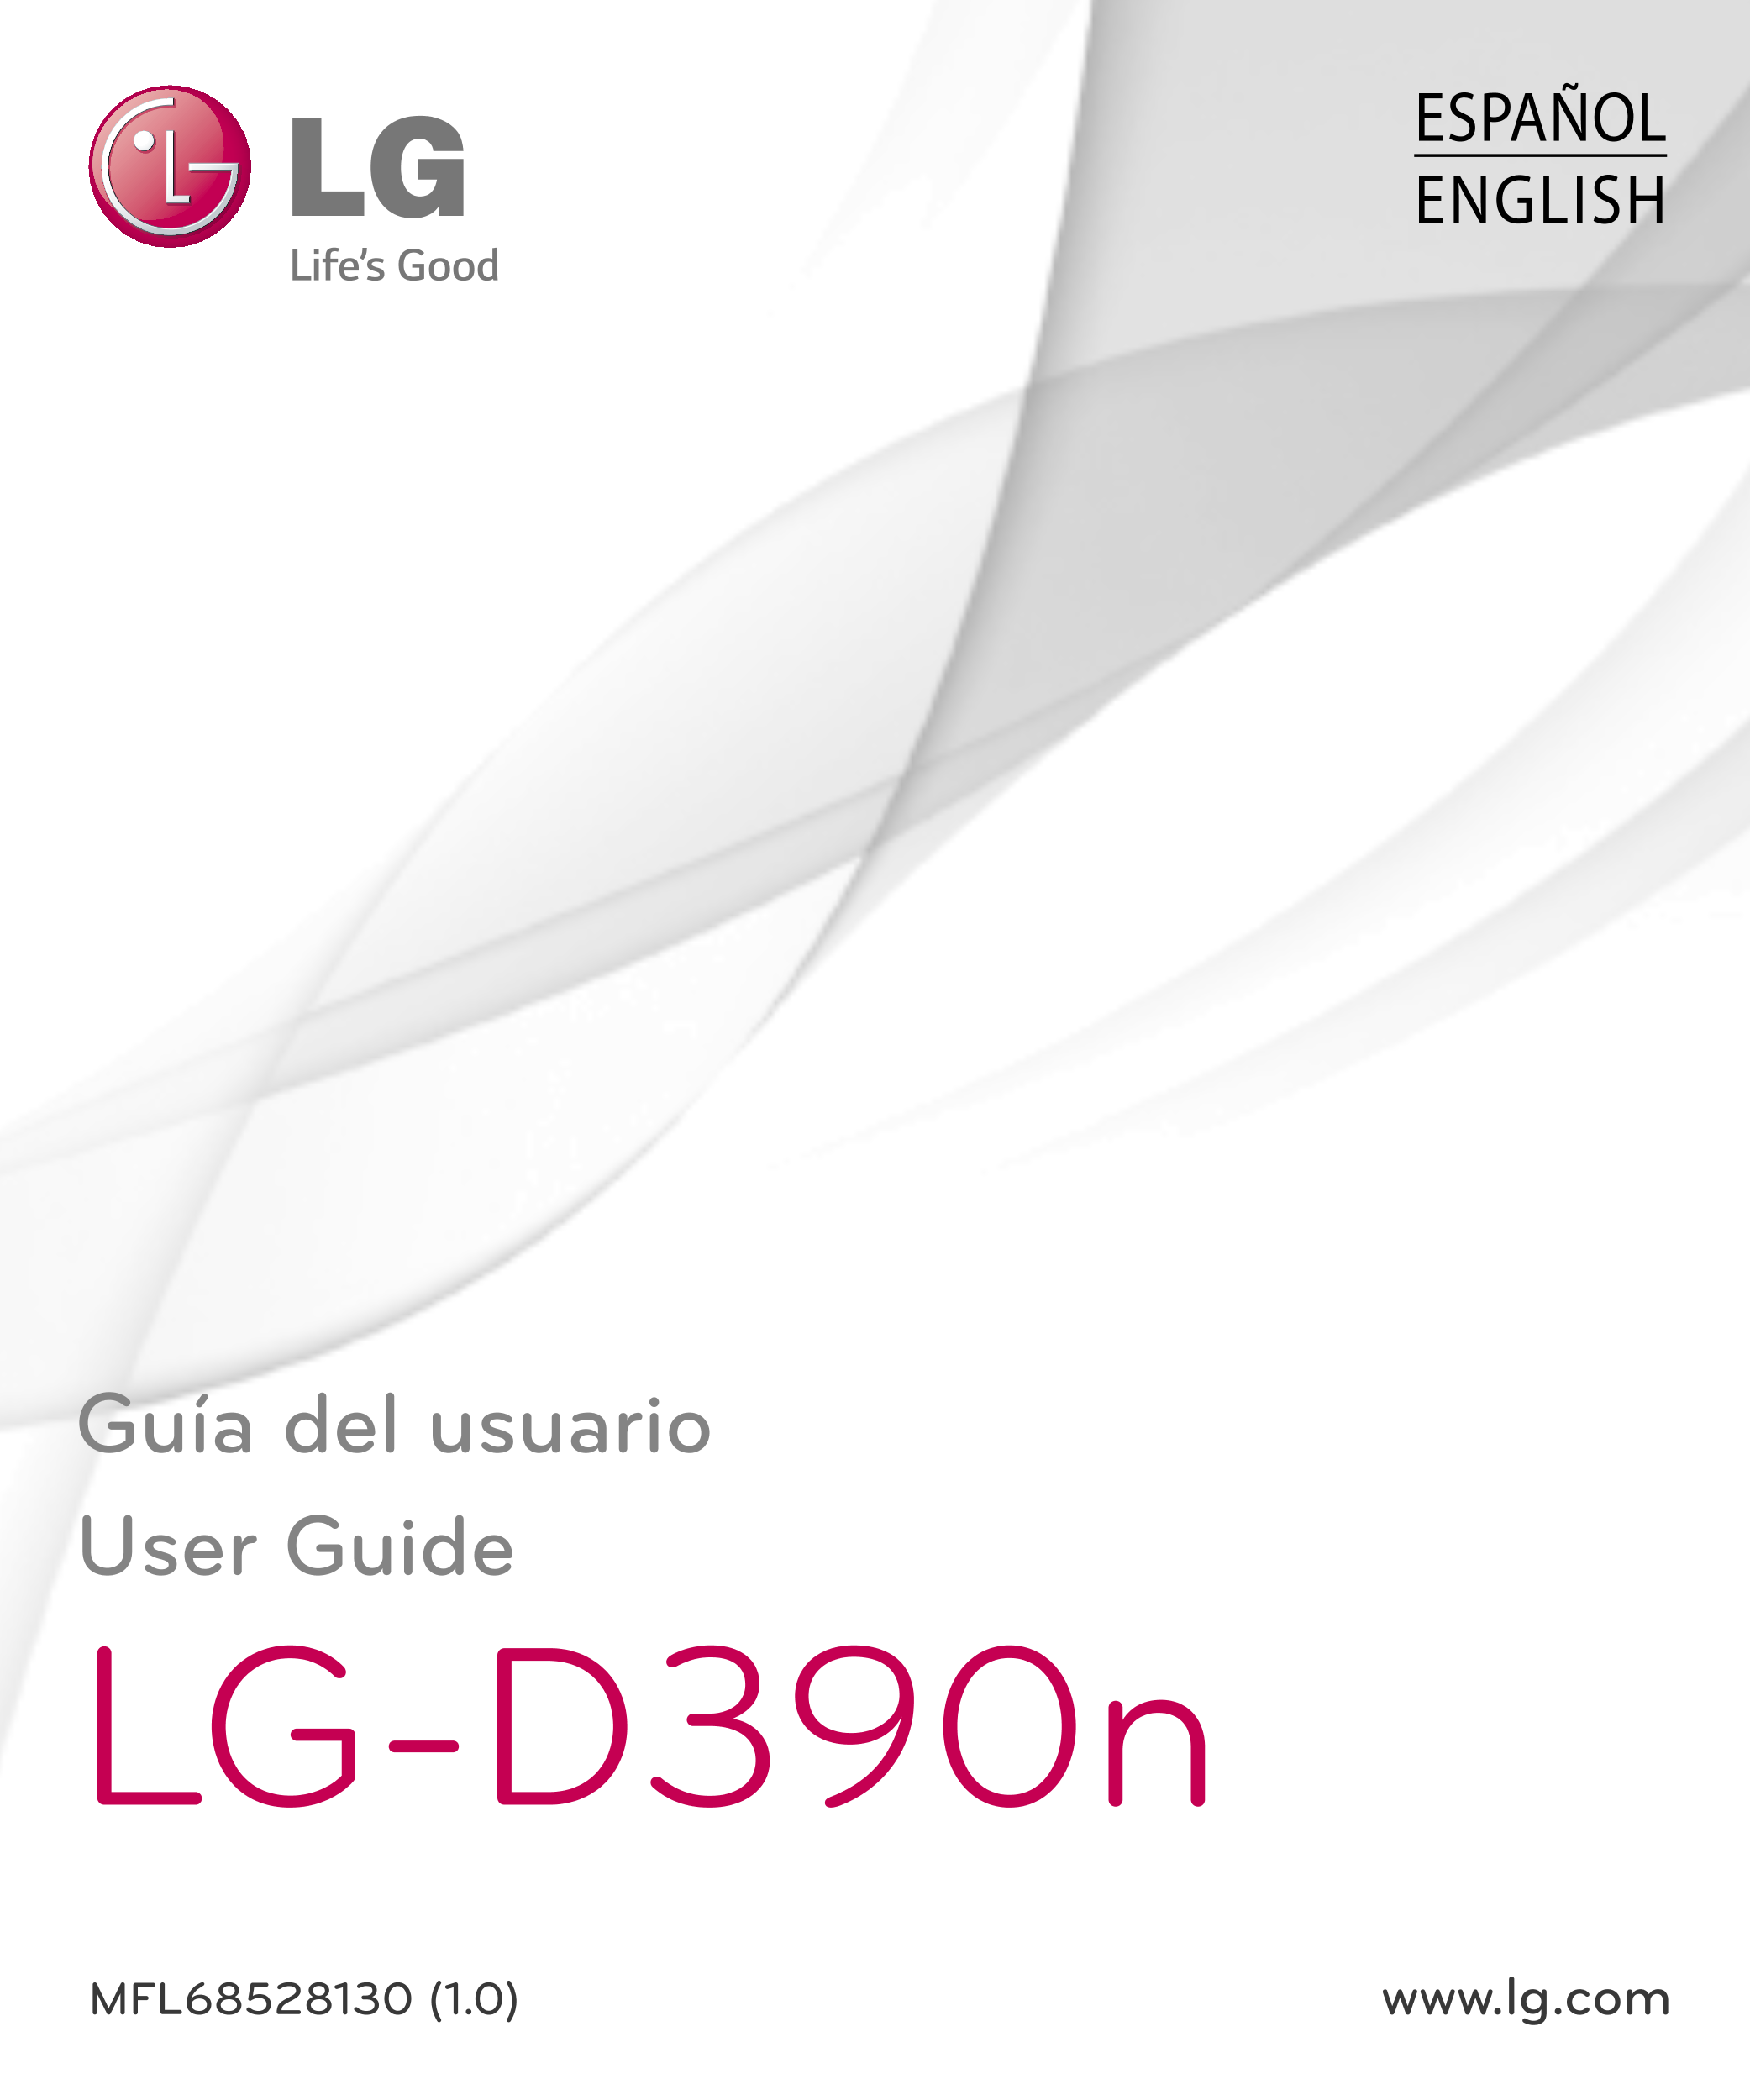 ESPAÑOL
ENGLISH
Guía del usuario
User Guide
LG-D390n
MFL68528130 (1.0)  www.lg.com